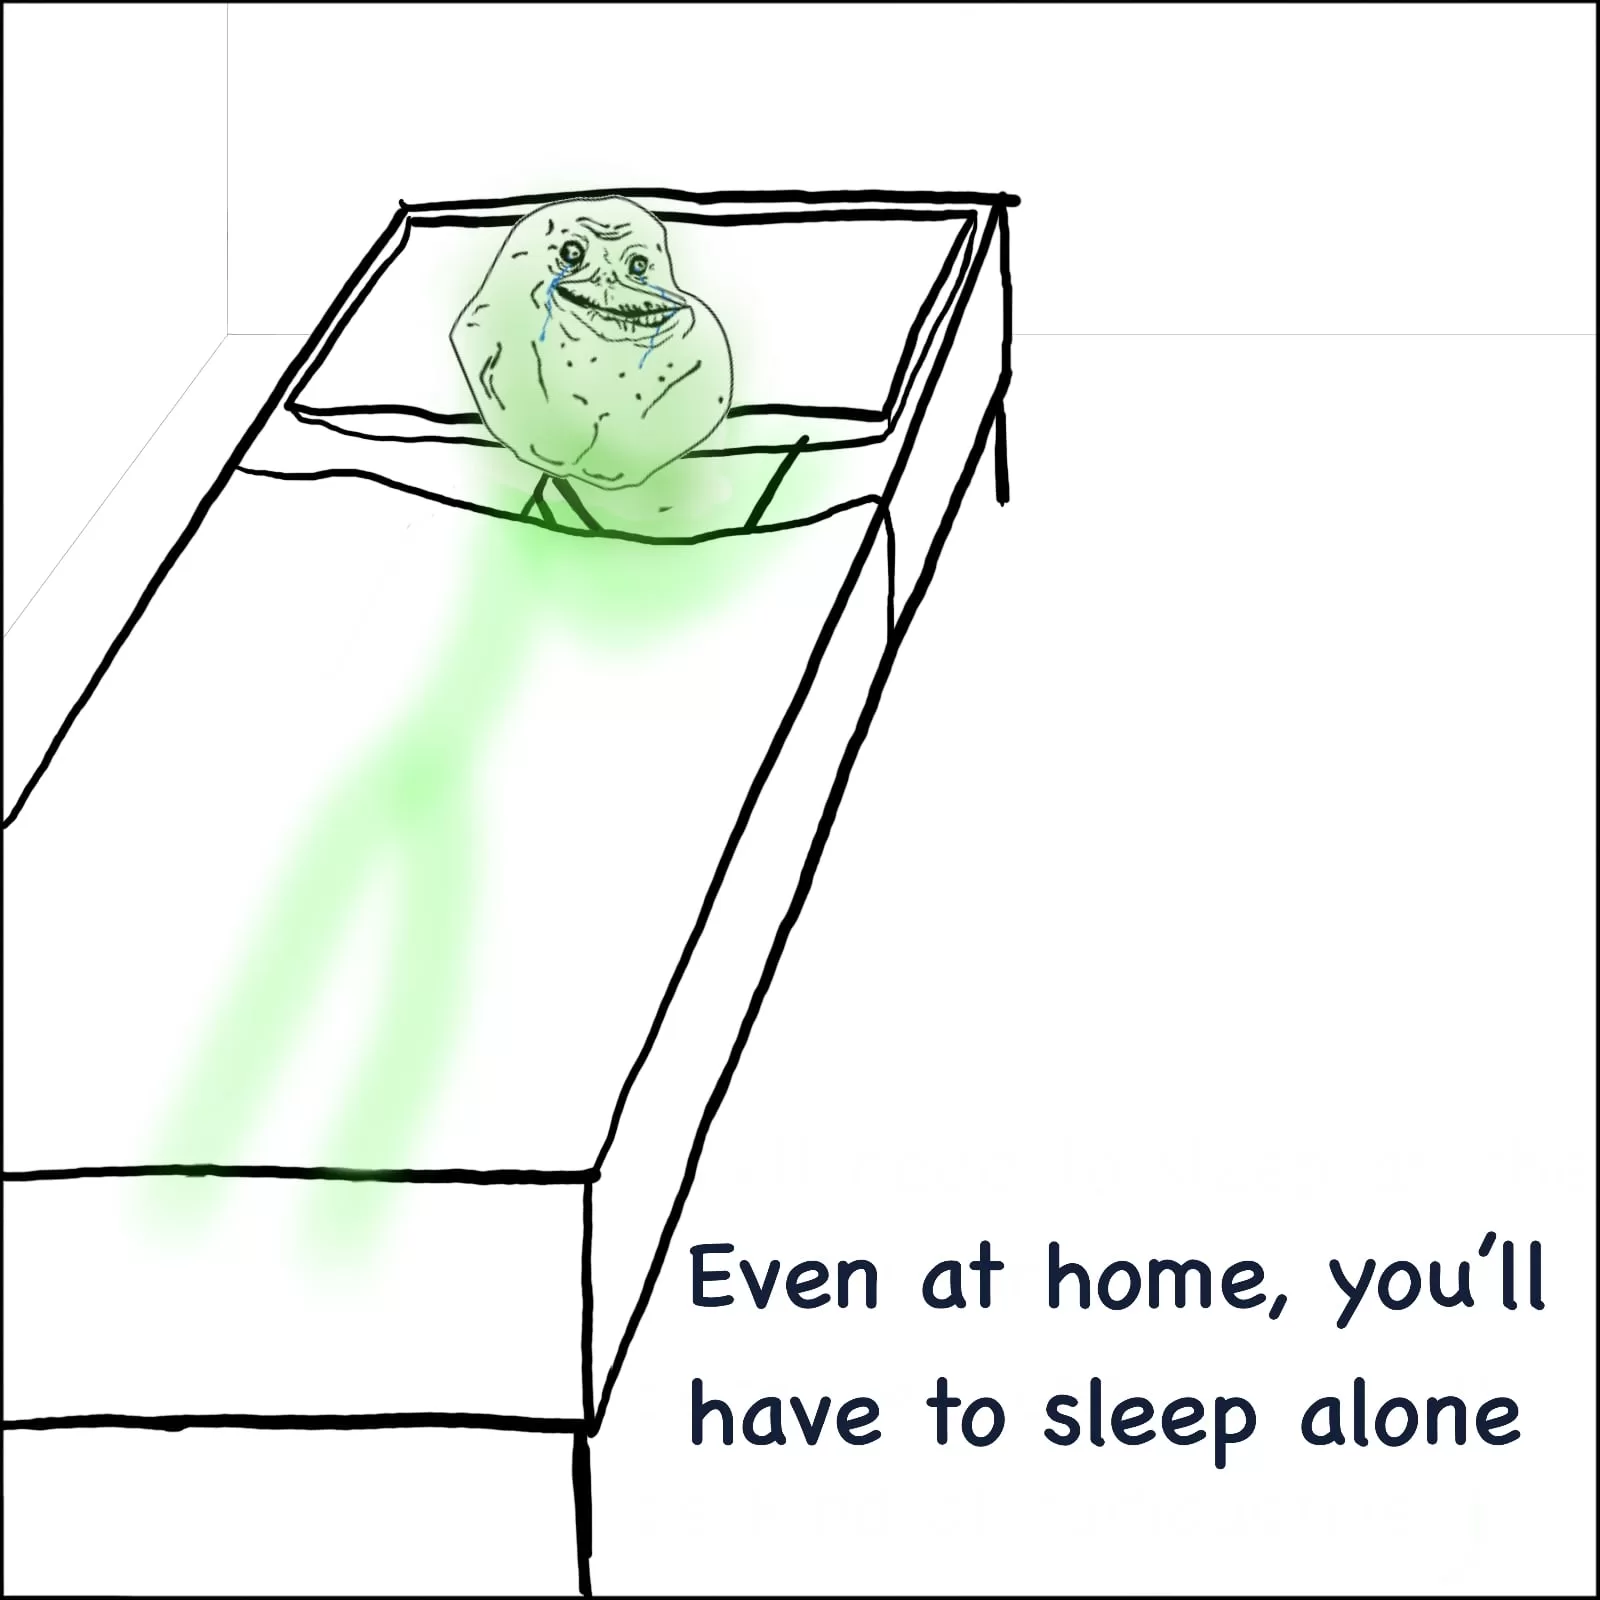 Man sleeping alone at home because of radioactivity